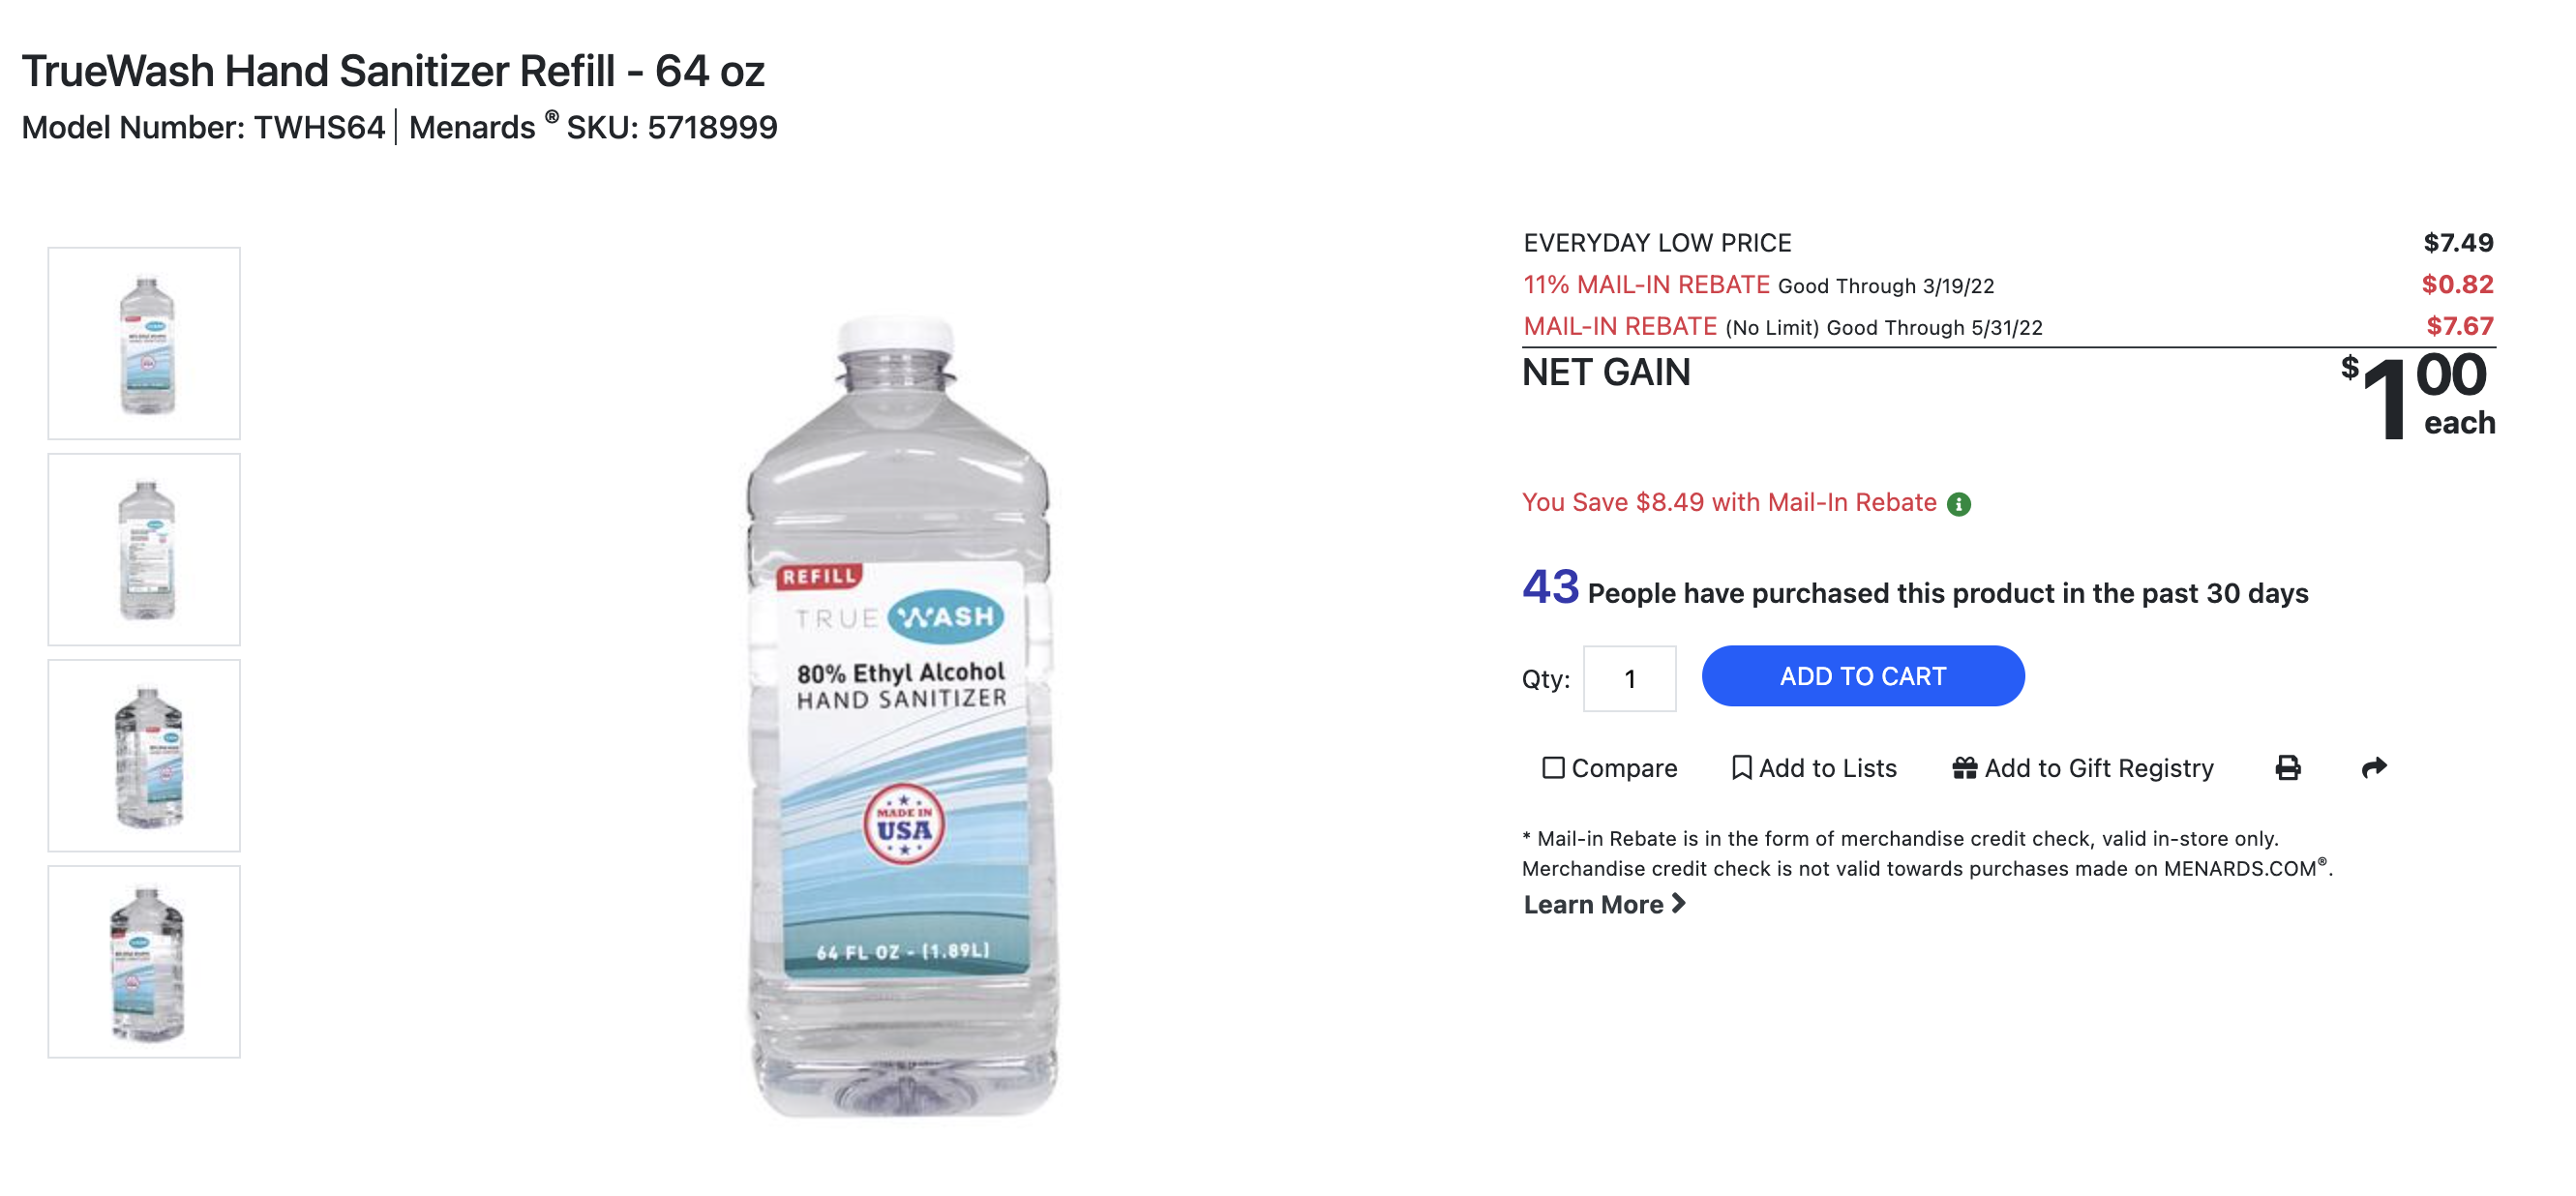 TrueWash Hand Sanitizer Refill - 64 oz (-$1 after rebate)